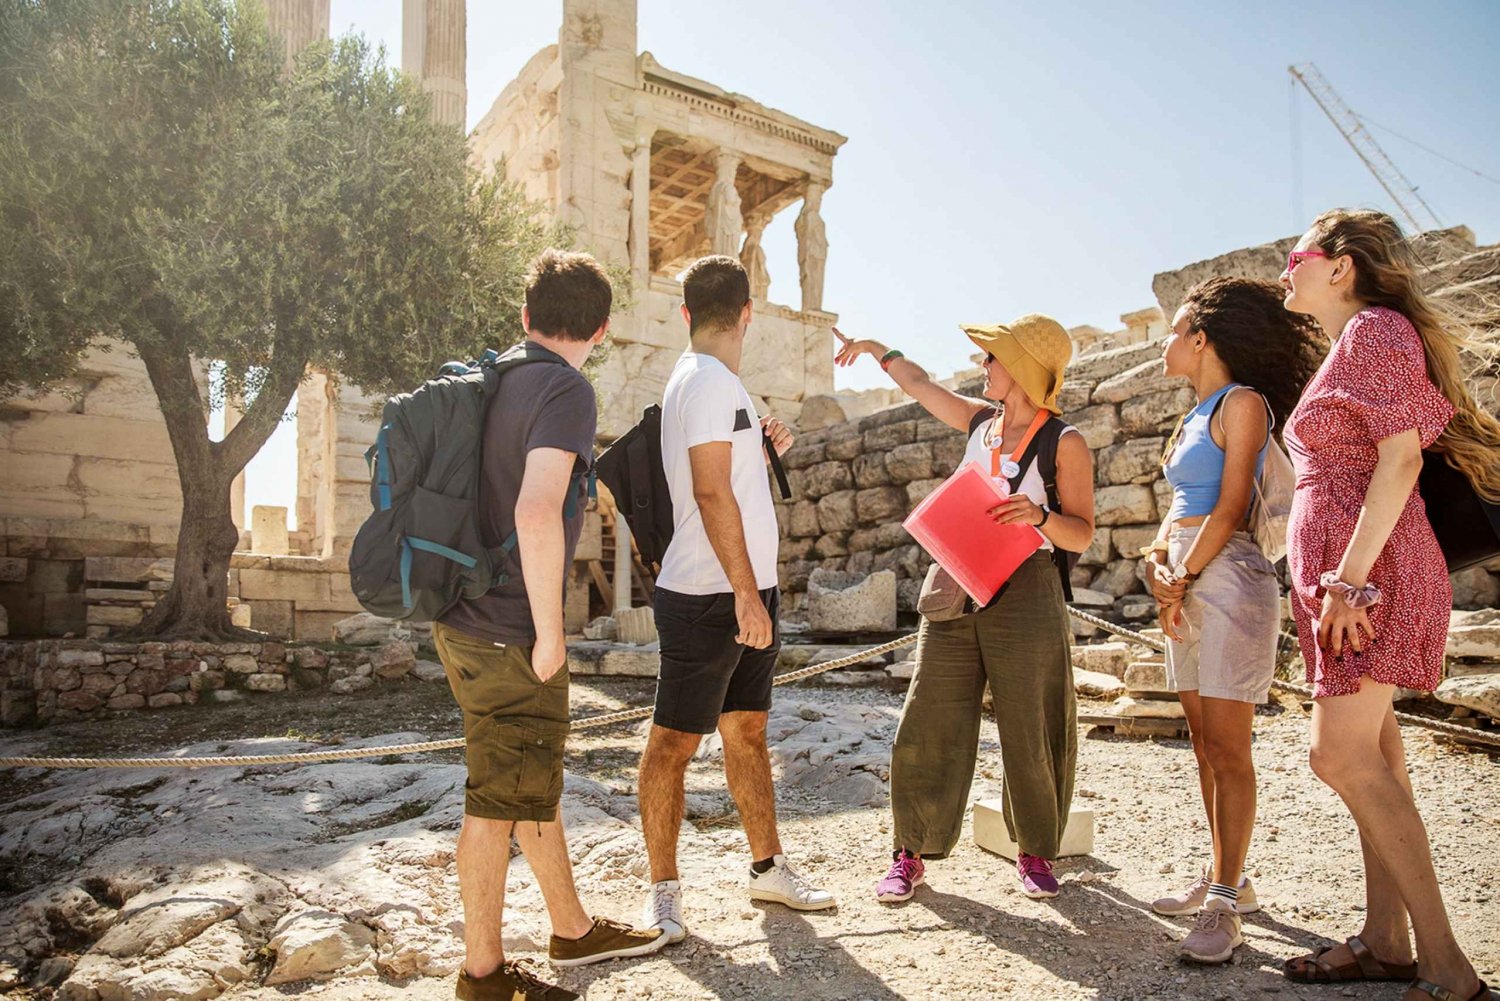 Atene: Tour guidato a piedi dell'Acropoli e del Partenone